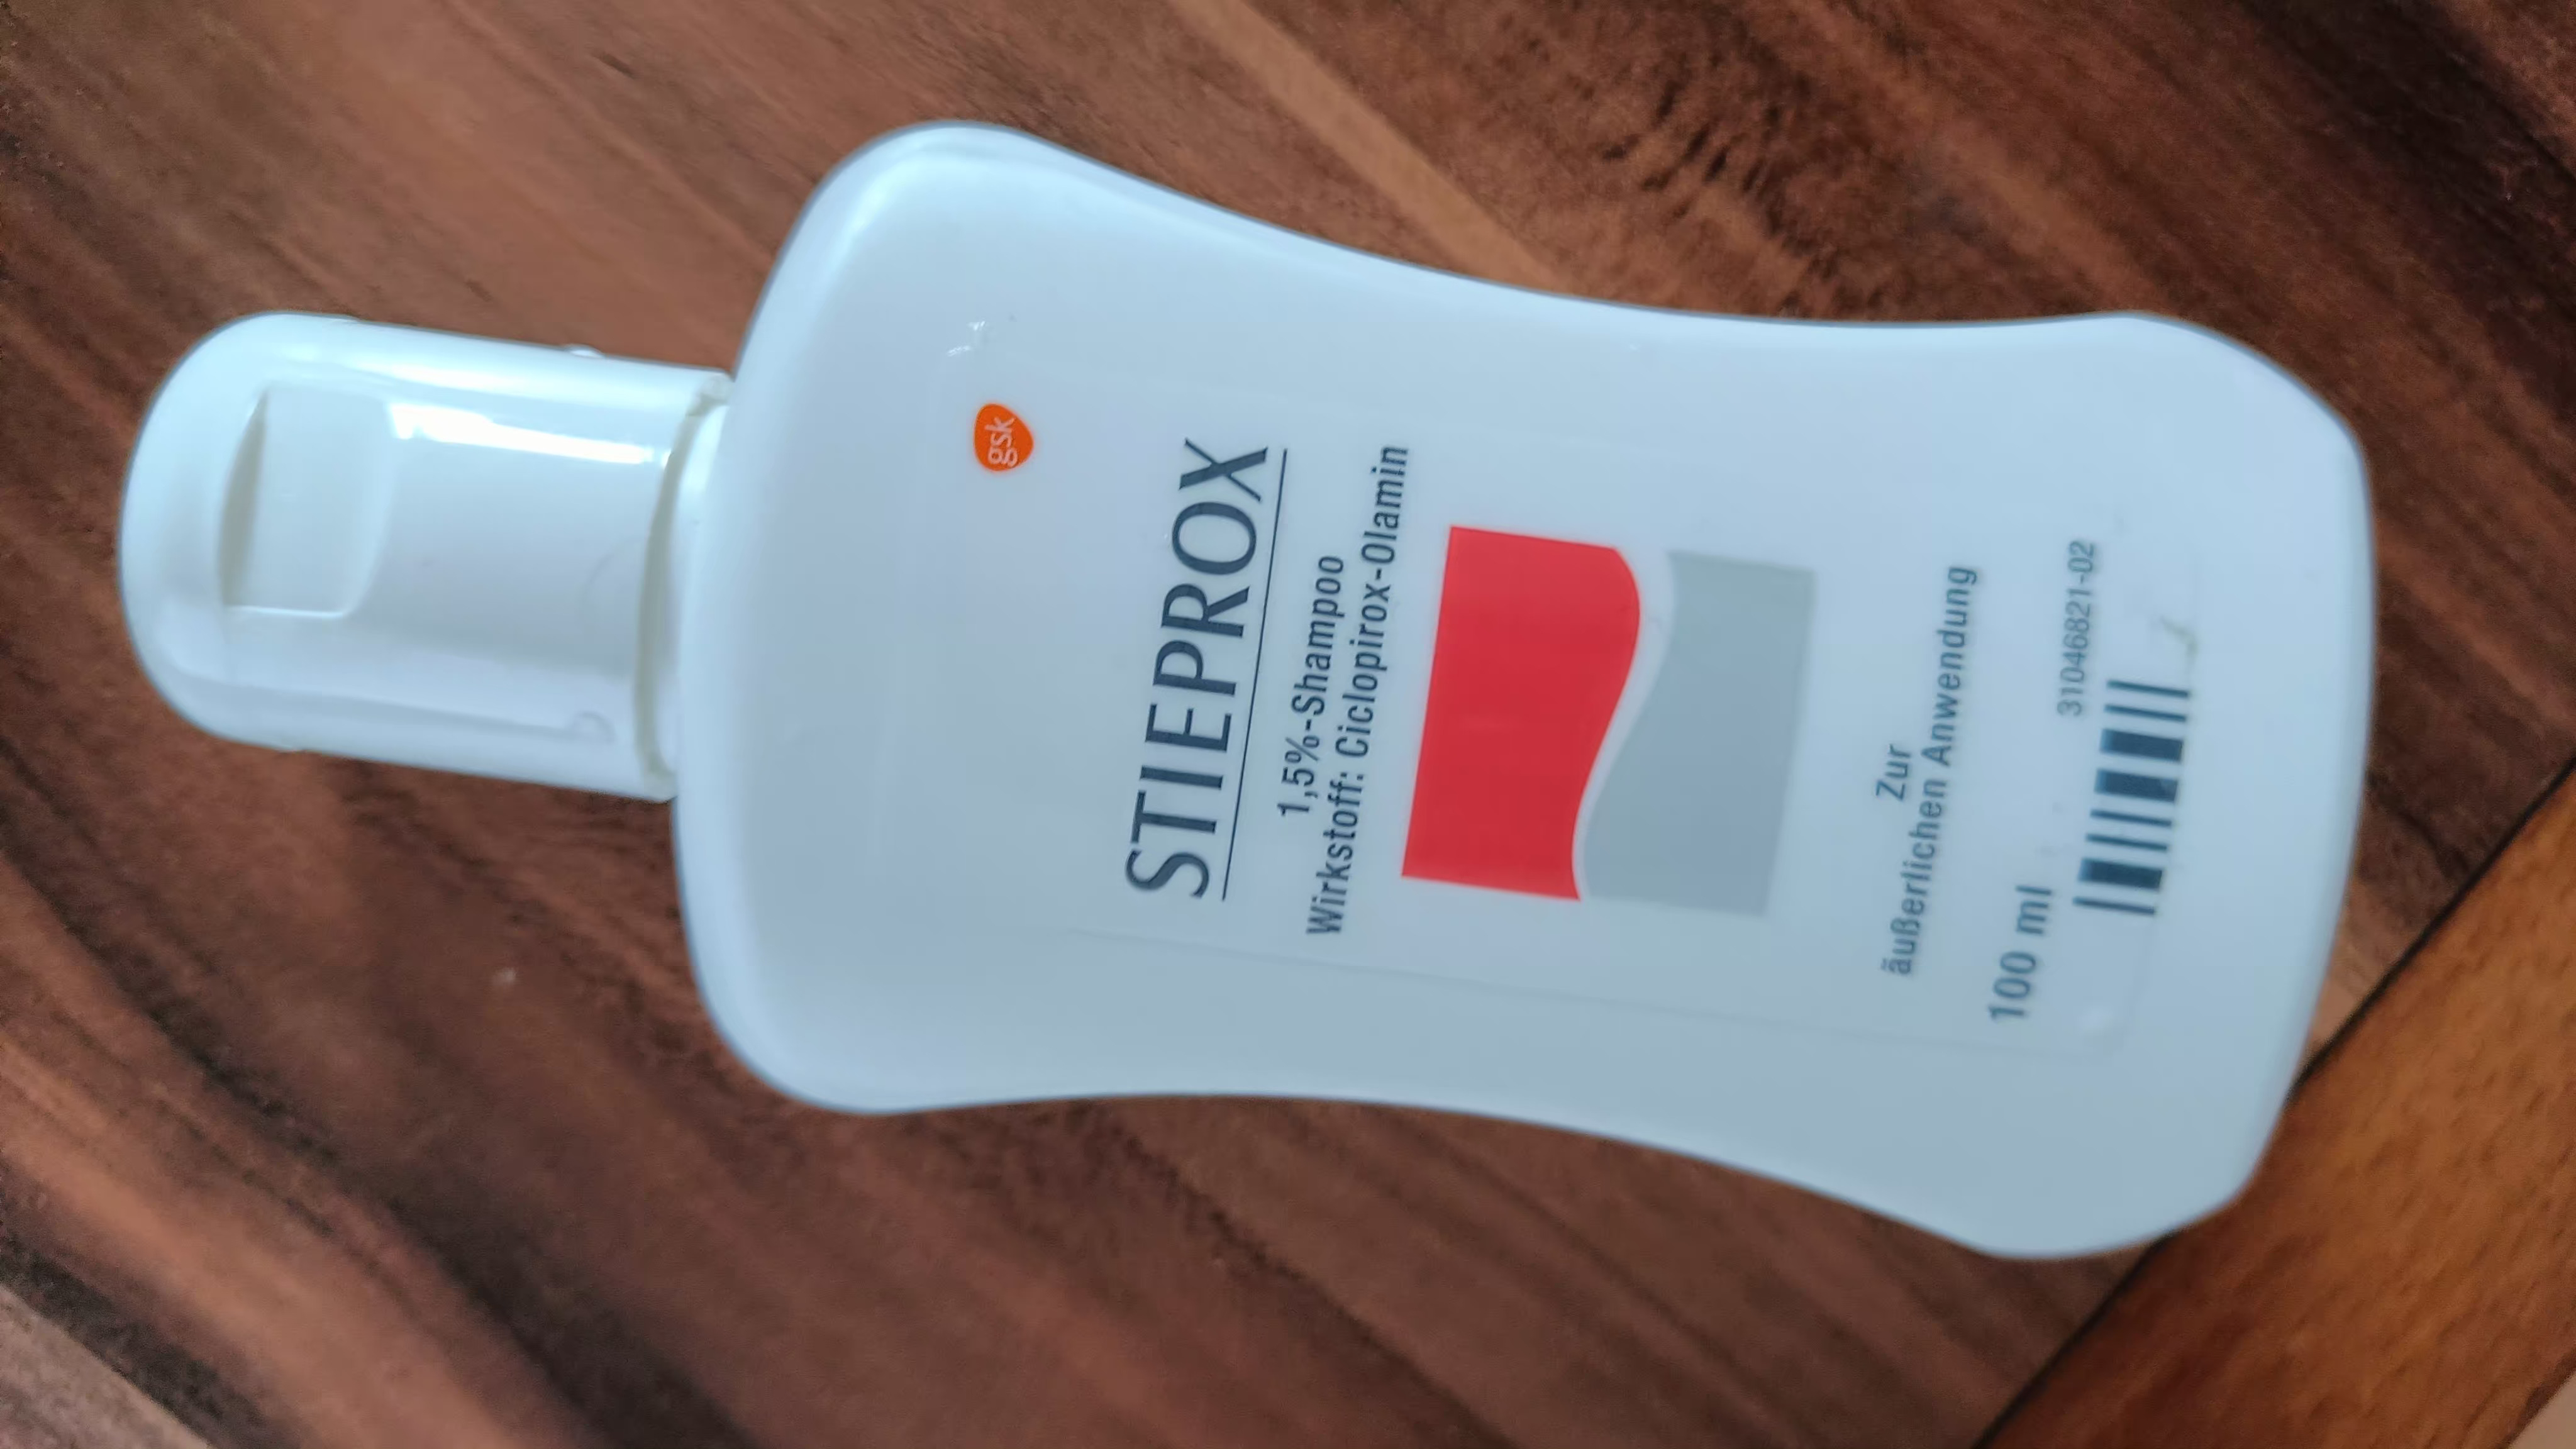 stieprox szampon zamiennik bez recepty